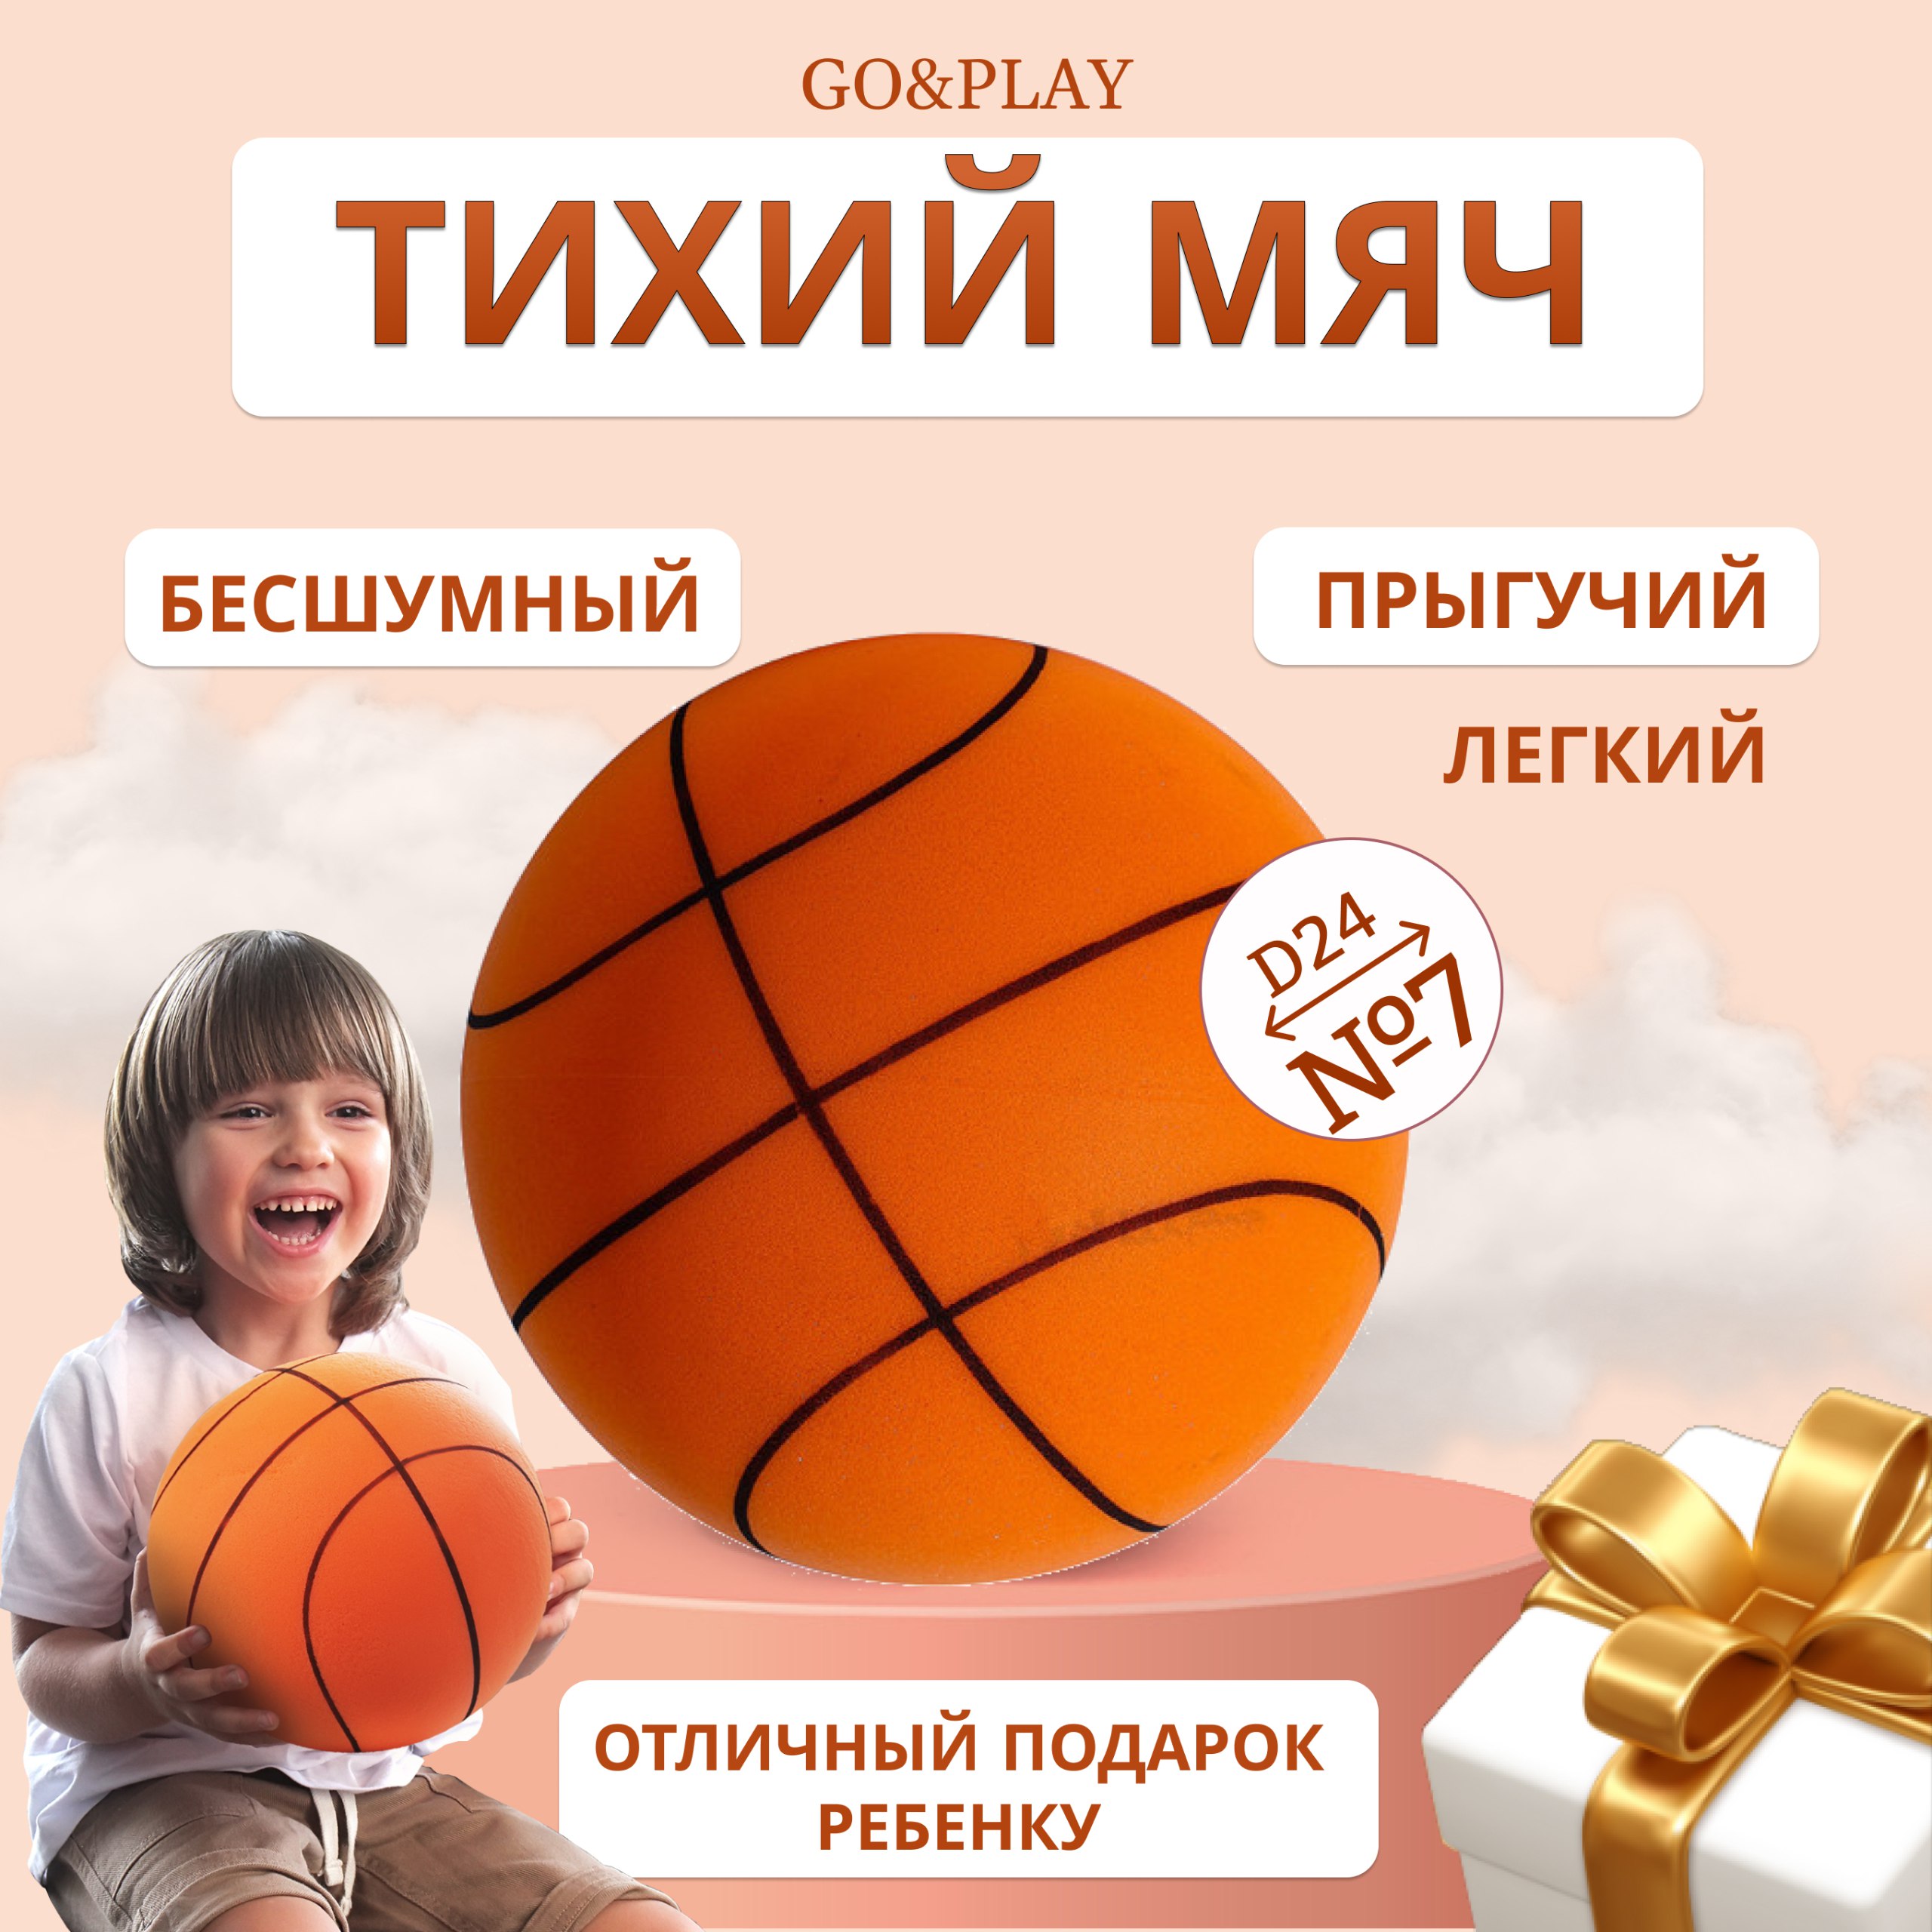 Бесшумный баскетбольный мяч GO&PLAY, из пеноматериала, оранжевый 24см